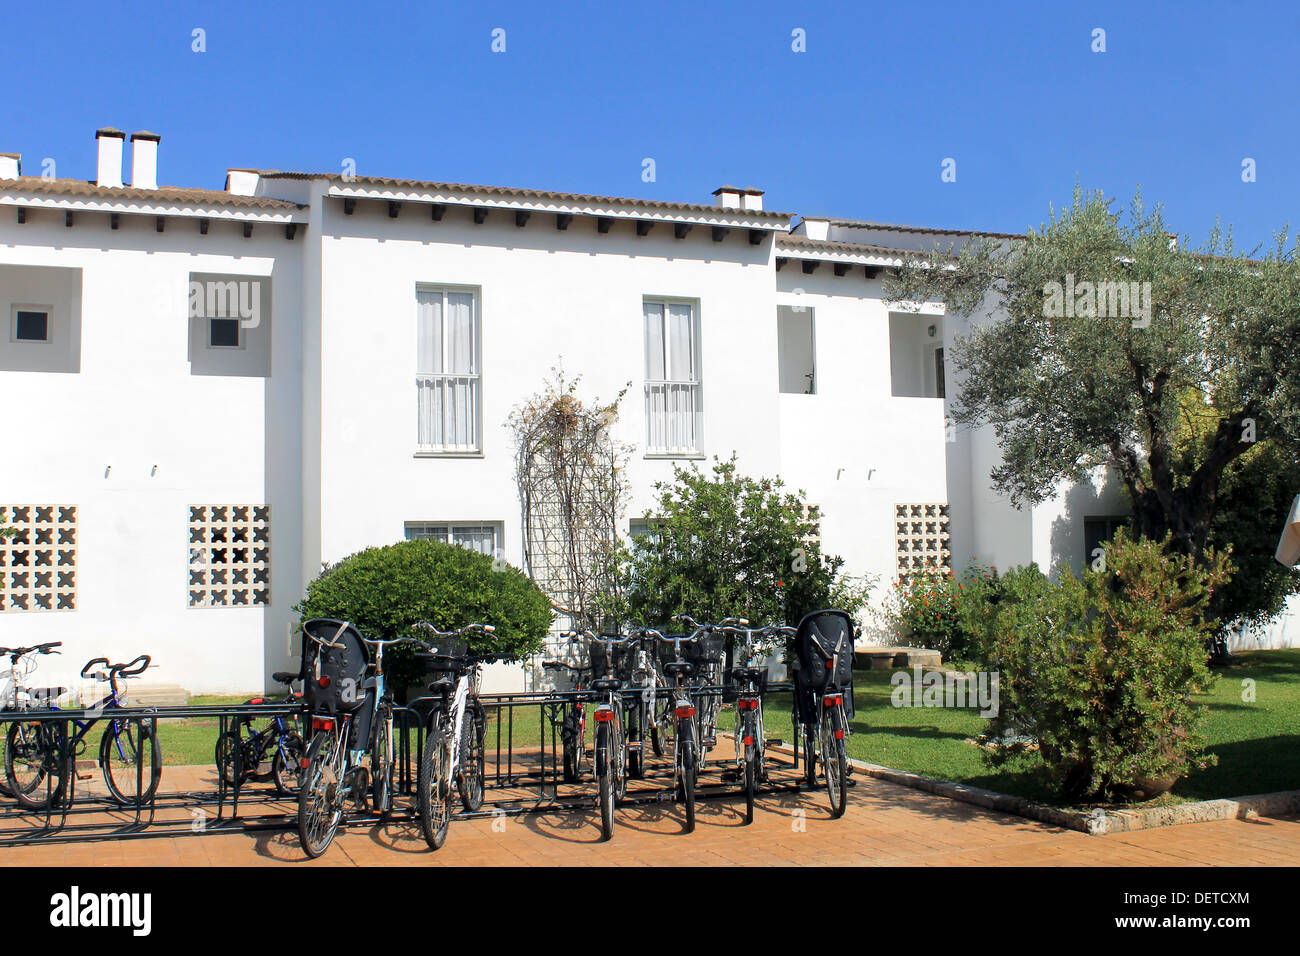 Appartamenti di vacanza in Spagna con la fila di biciclette in primo piano. Foto Stock